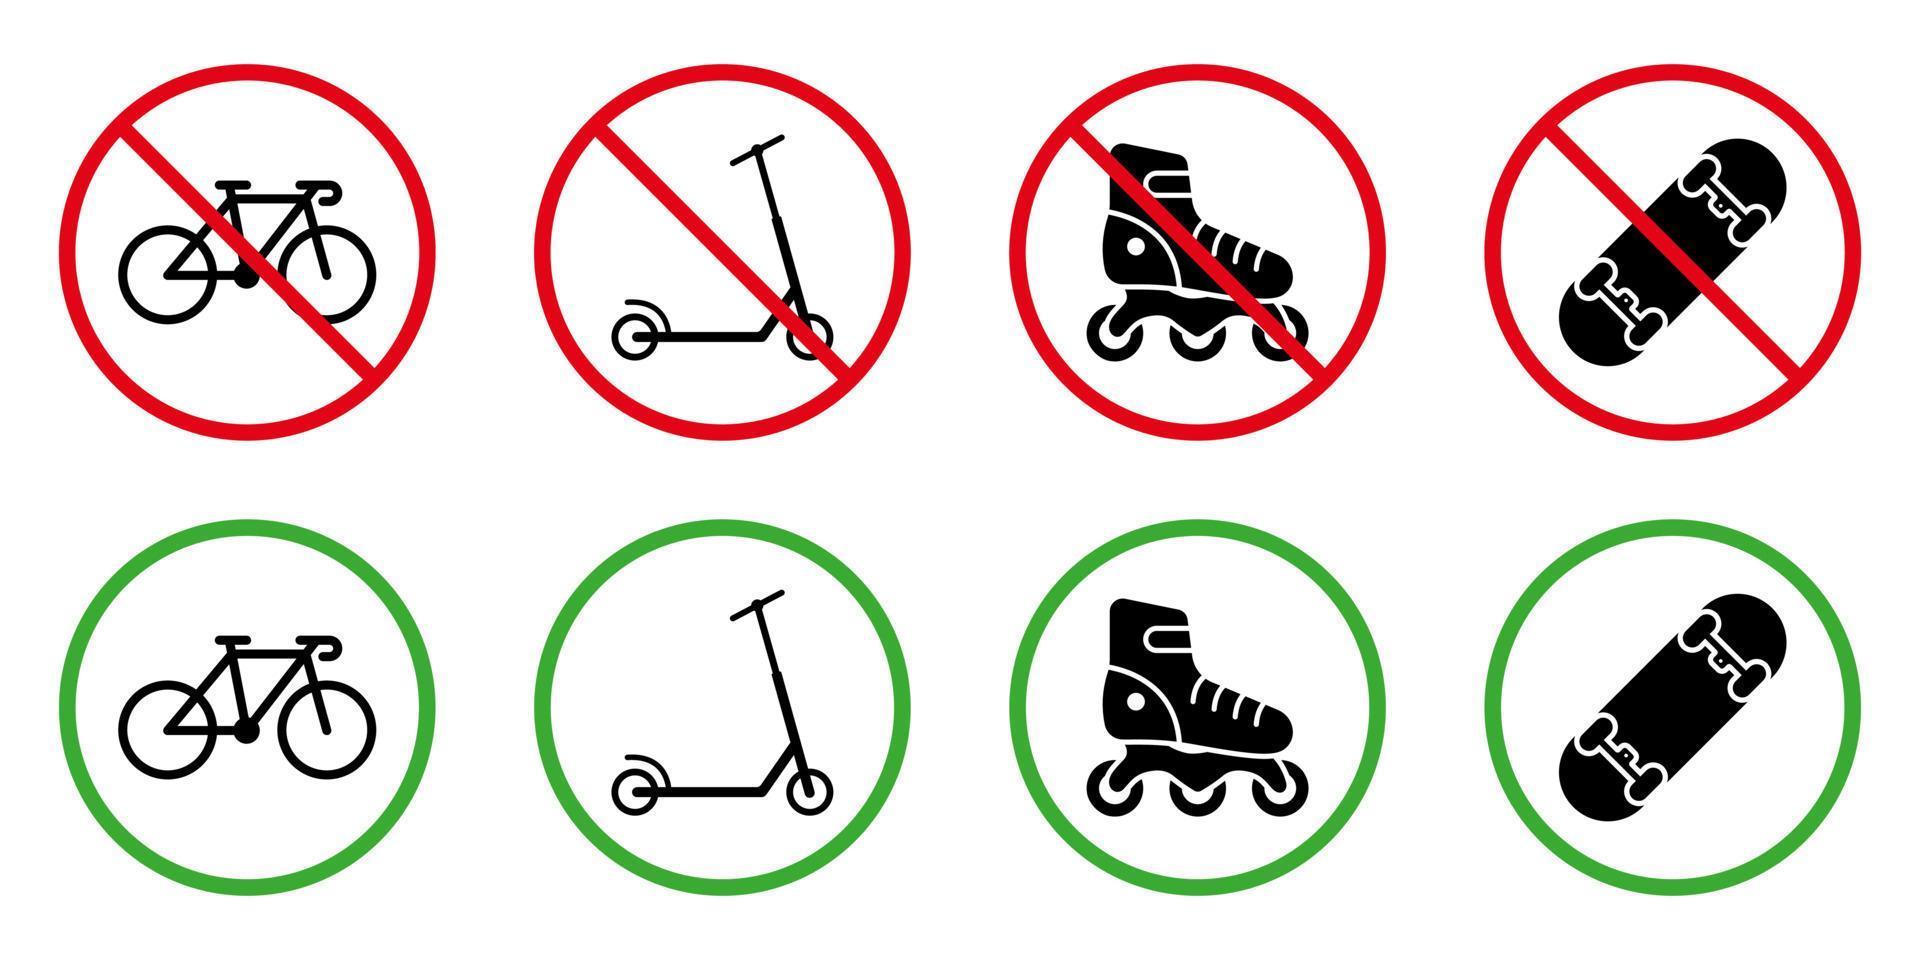 tillåten zon för push-transportskyltset. förbjud rullskridskobräda sparka skoter svart cykel siluett ikon. uppmärksamhet förbjuda faroområdet hjul transport piktogram. isolerade vektor illustration.